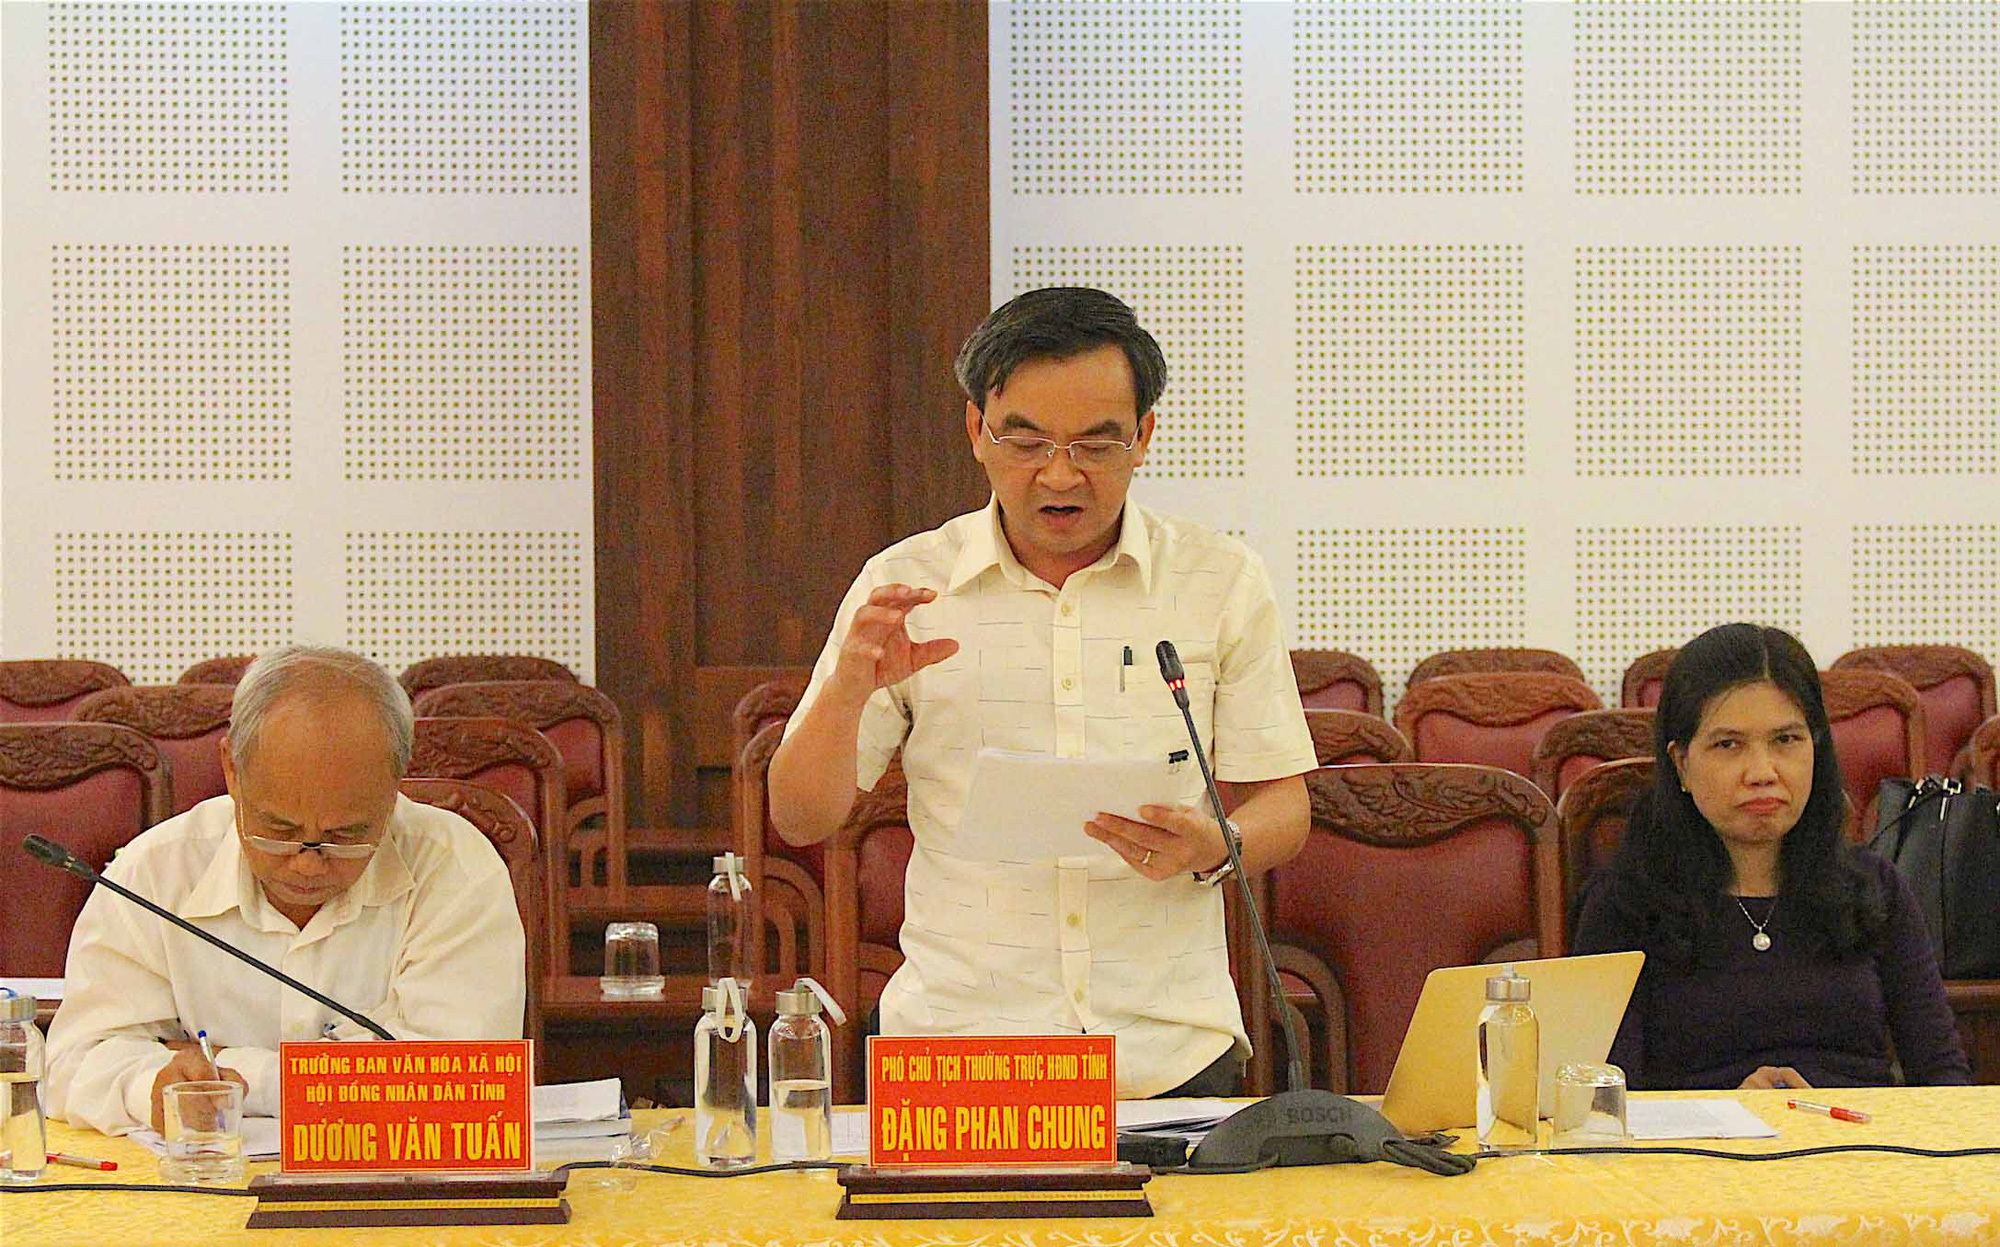 Phó Chủ tịch HĐND tỉnh Gia Lai can thiệp trái phép vào hoạt động Tòa án - Ảnh 1.